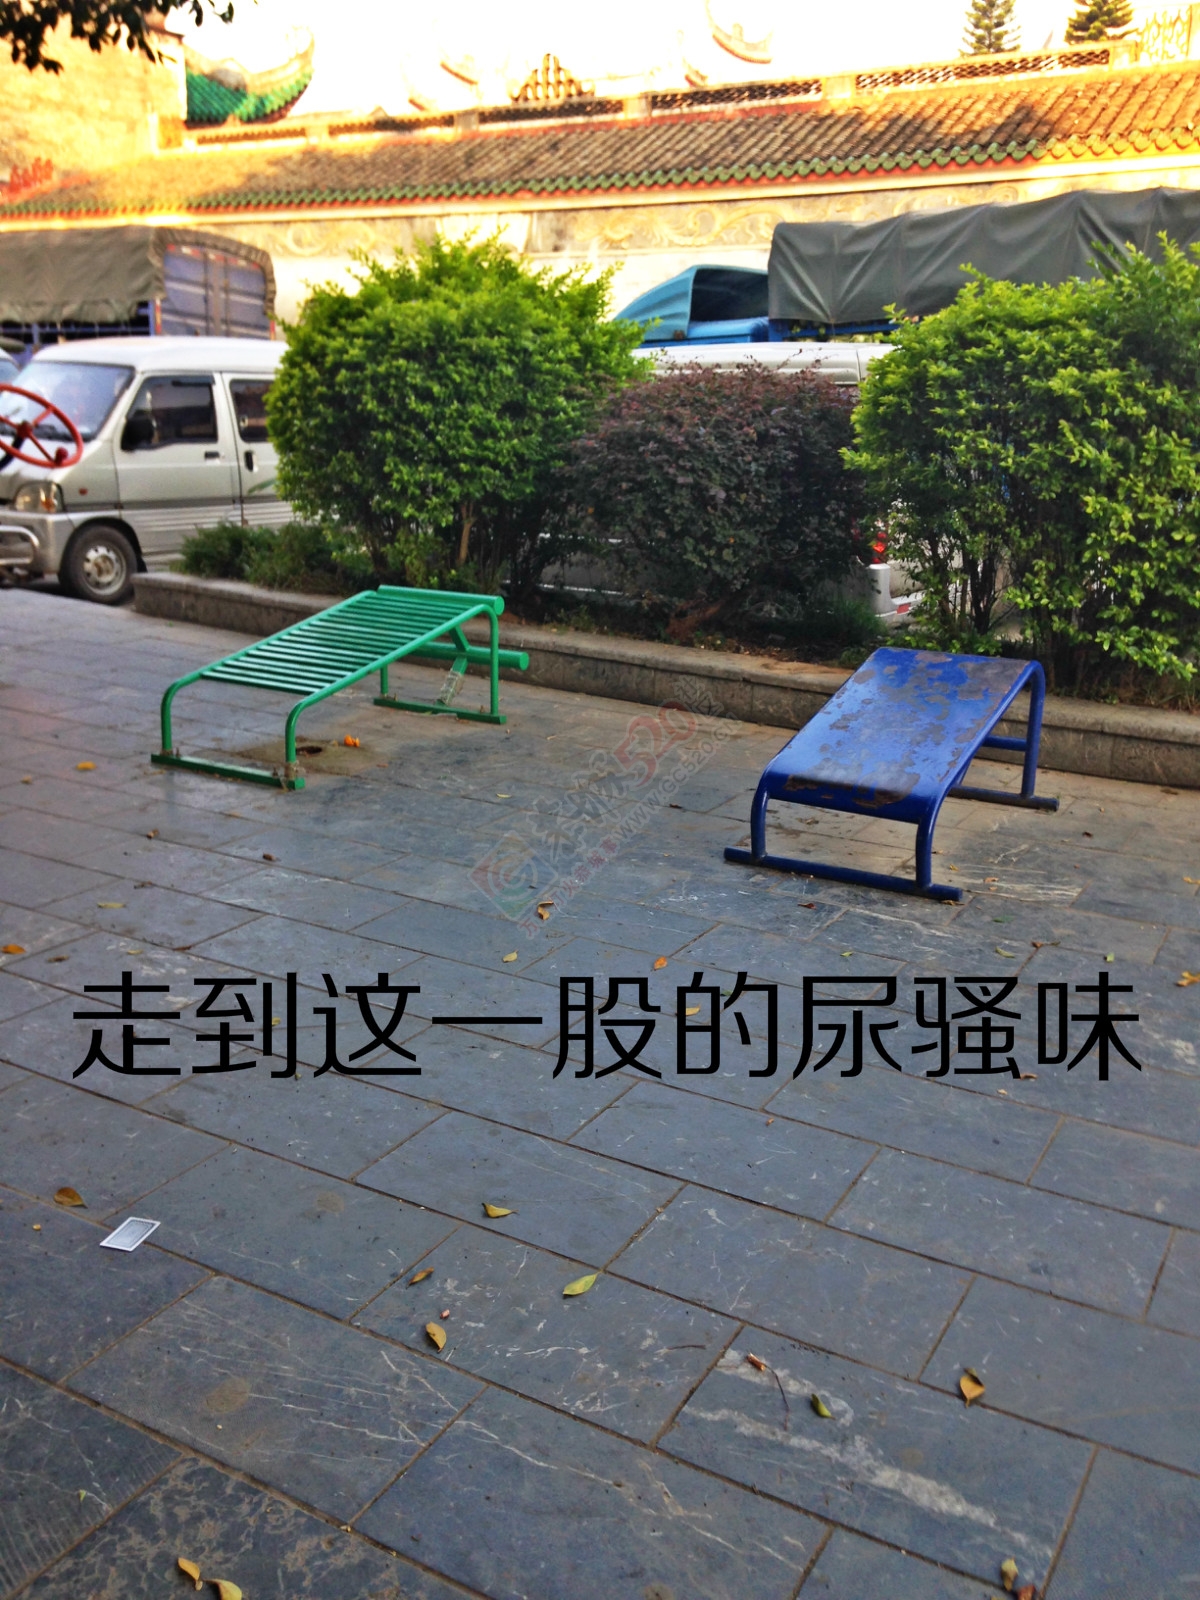 昔日的小广场如今已成了“垃圾堆”31 / 作者:恭城520小奈姐姐 / 帖子ID:128568